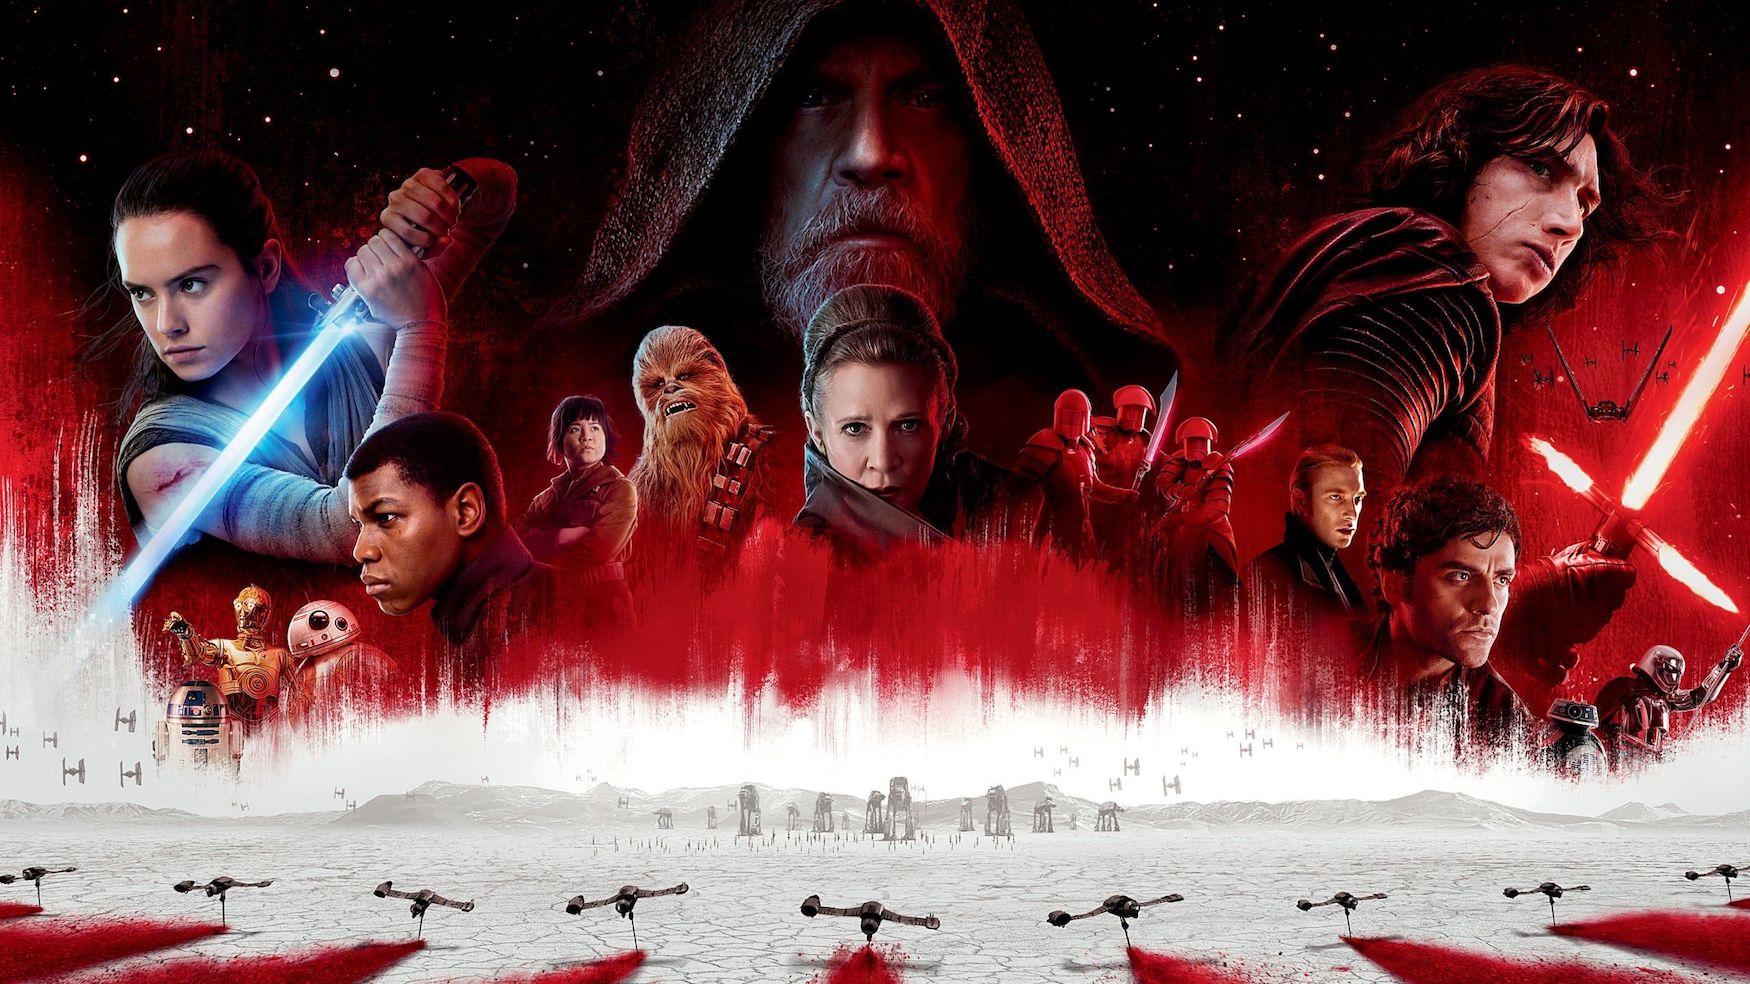 Le 10 domande che ci ha lasciato Star Wars: Gli Ultimi Jedi